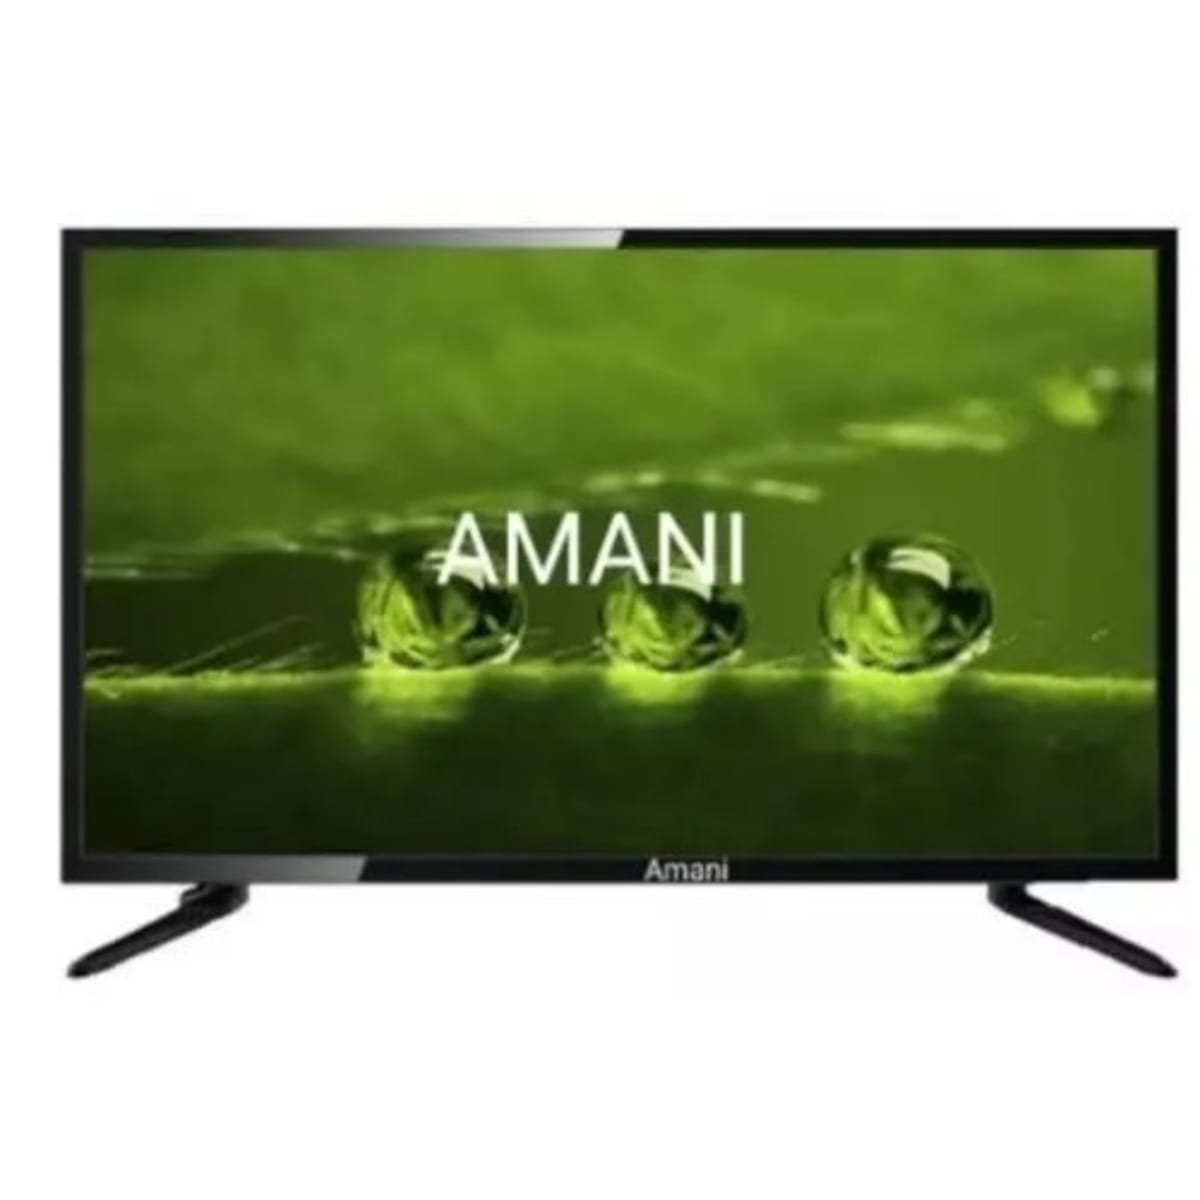 Amani Led Tv - 26 - Black | Konga Shopping